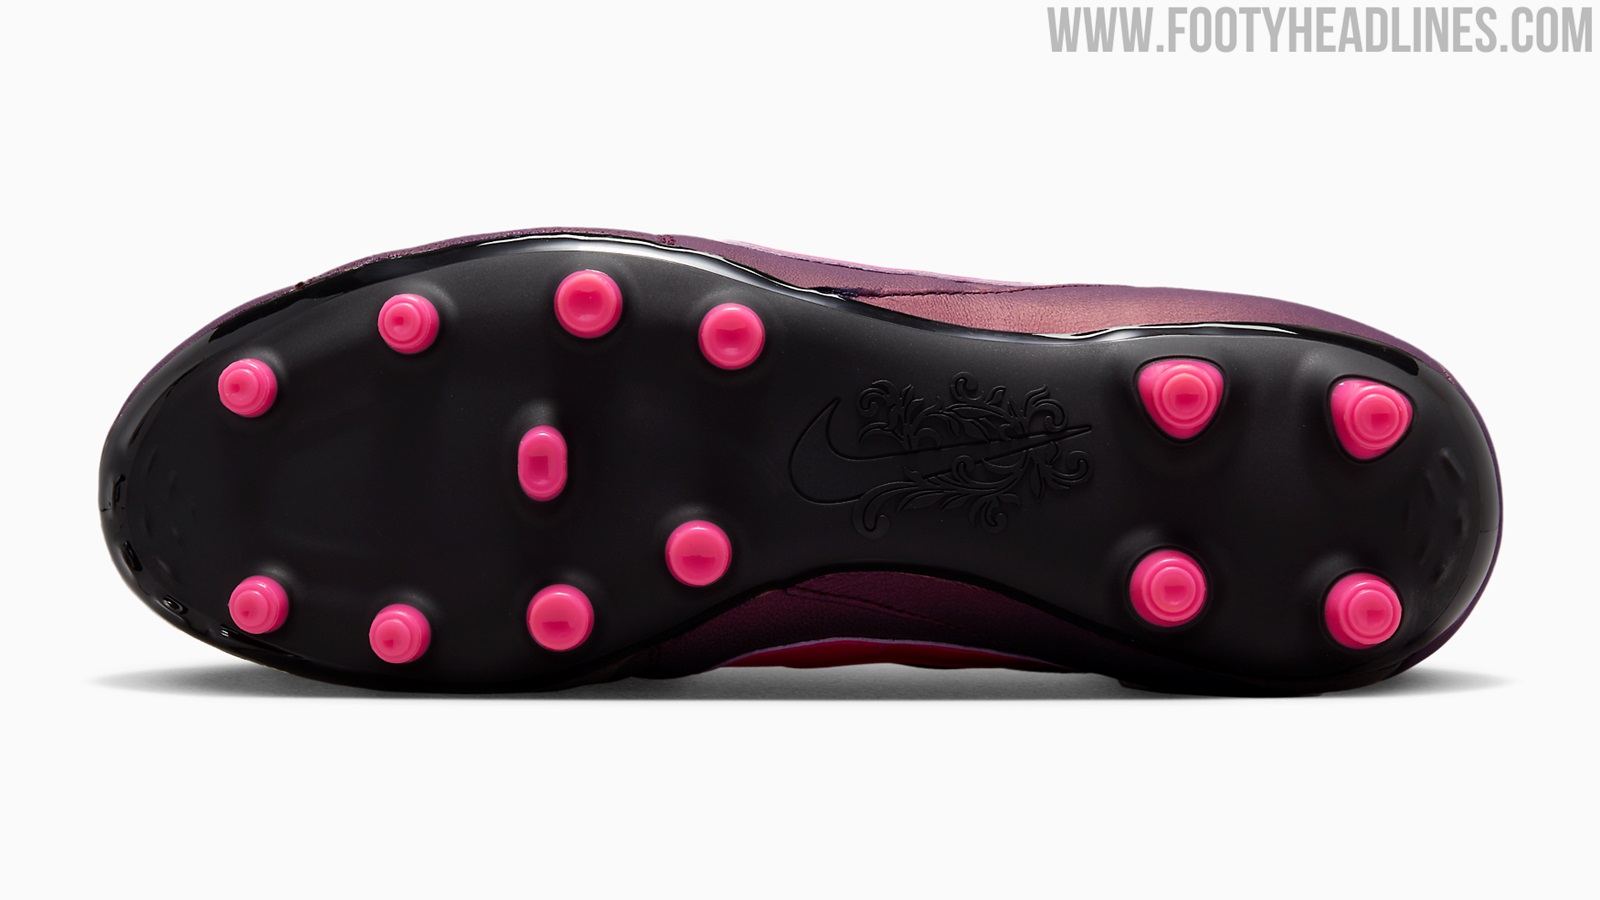 Bewust worden diameter Bouwen Space Purple' Nike Premier III Boots Released - Footy Headlines